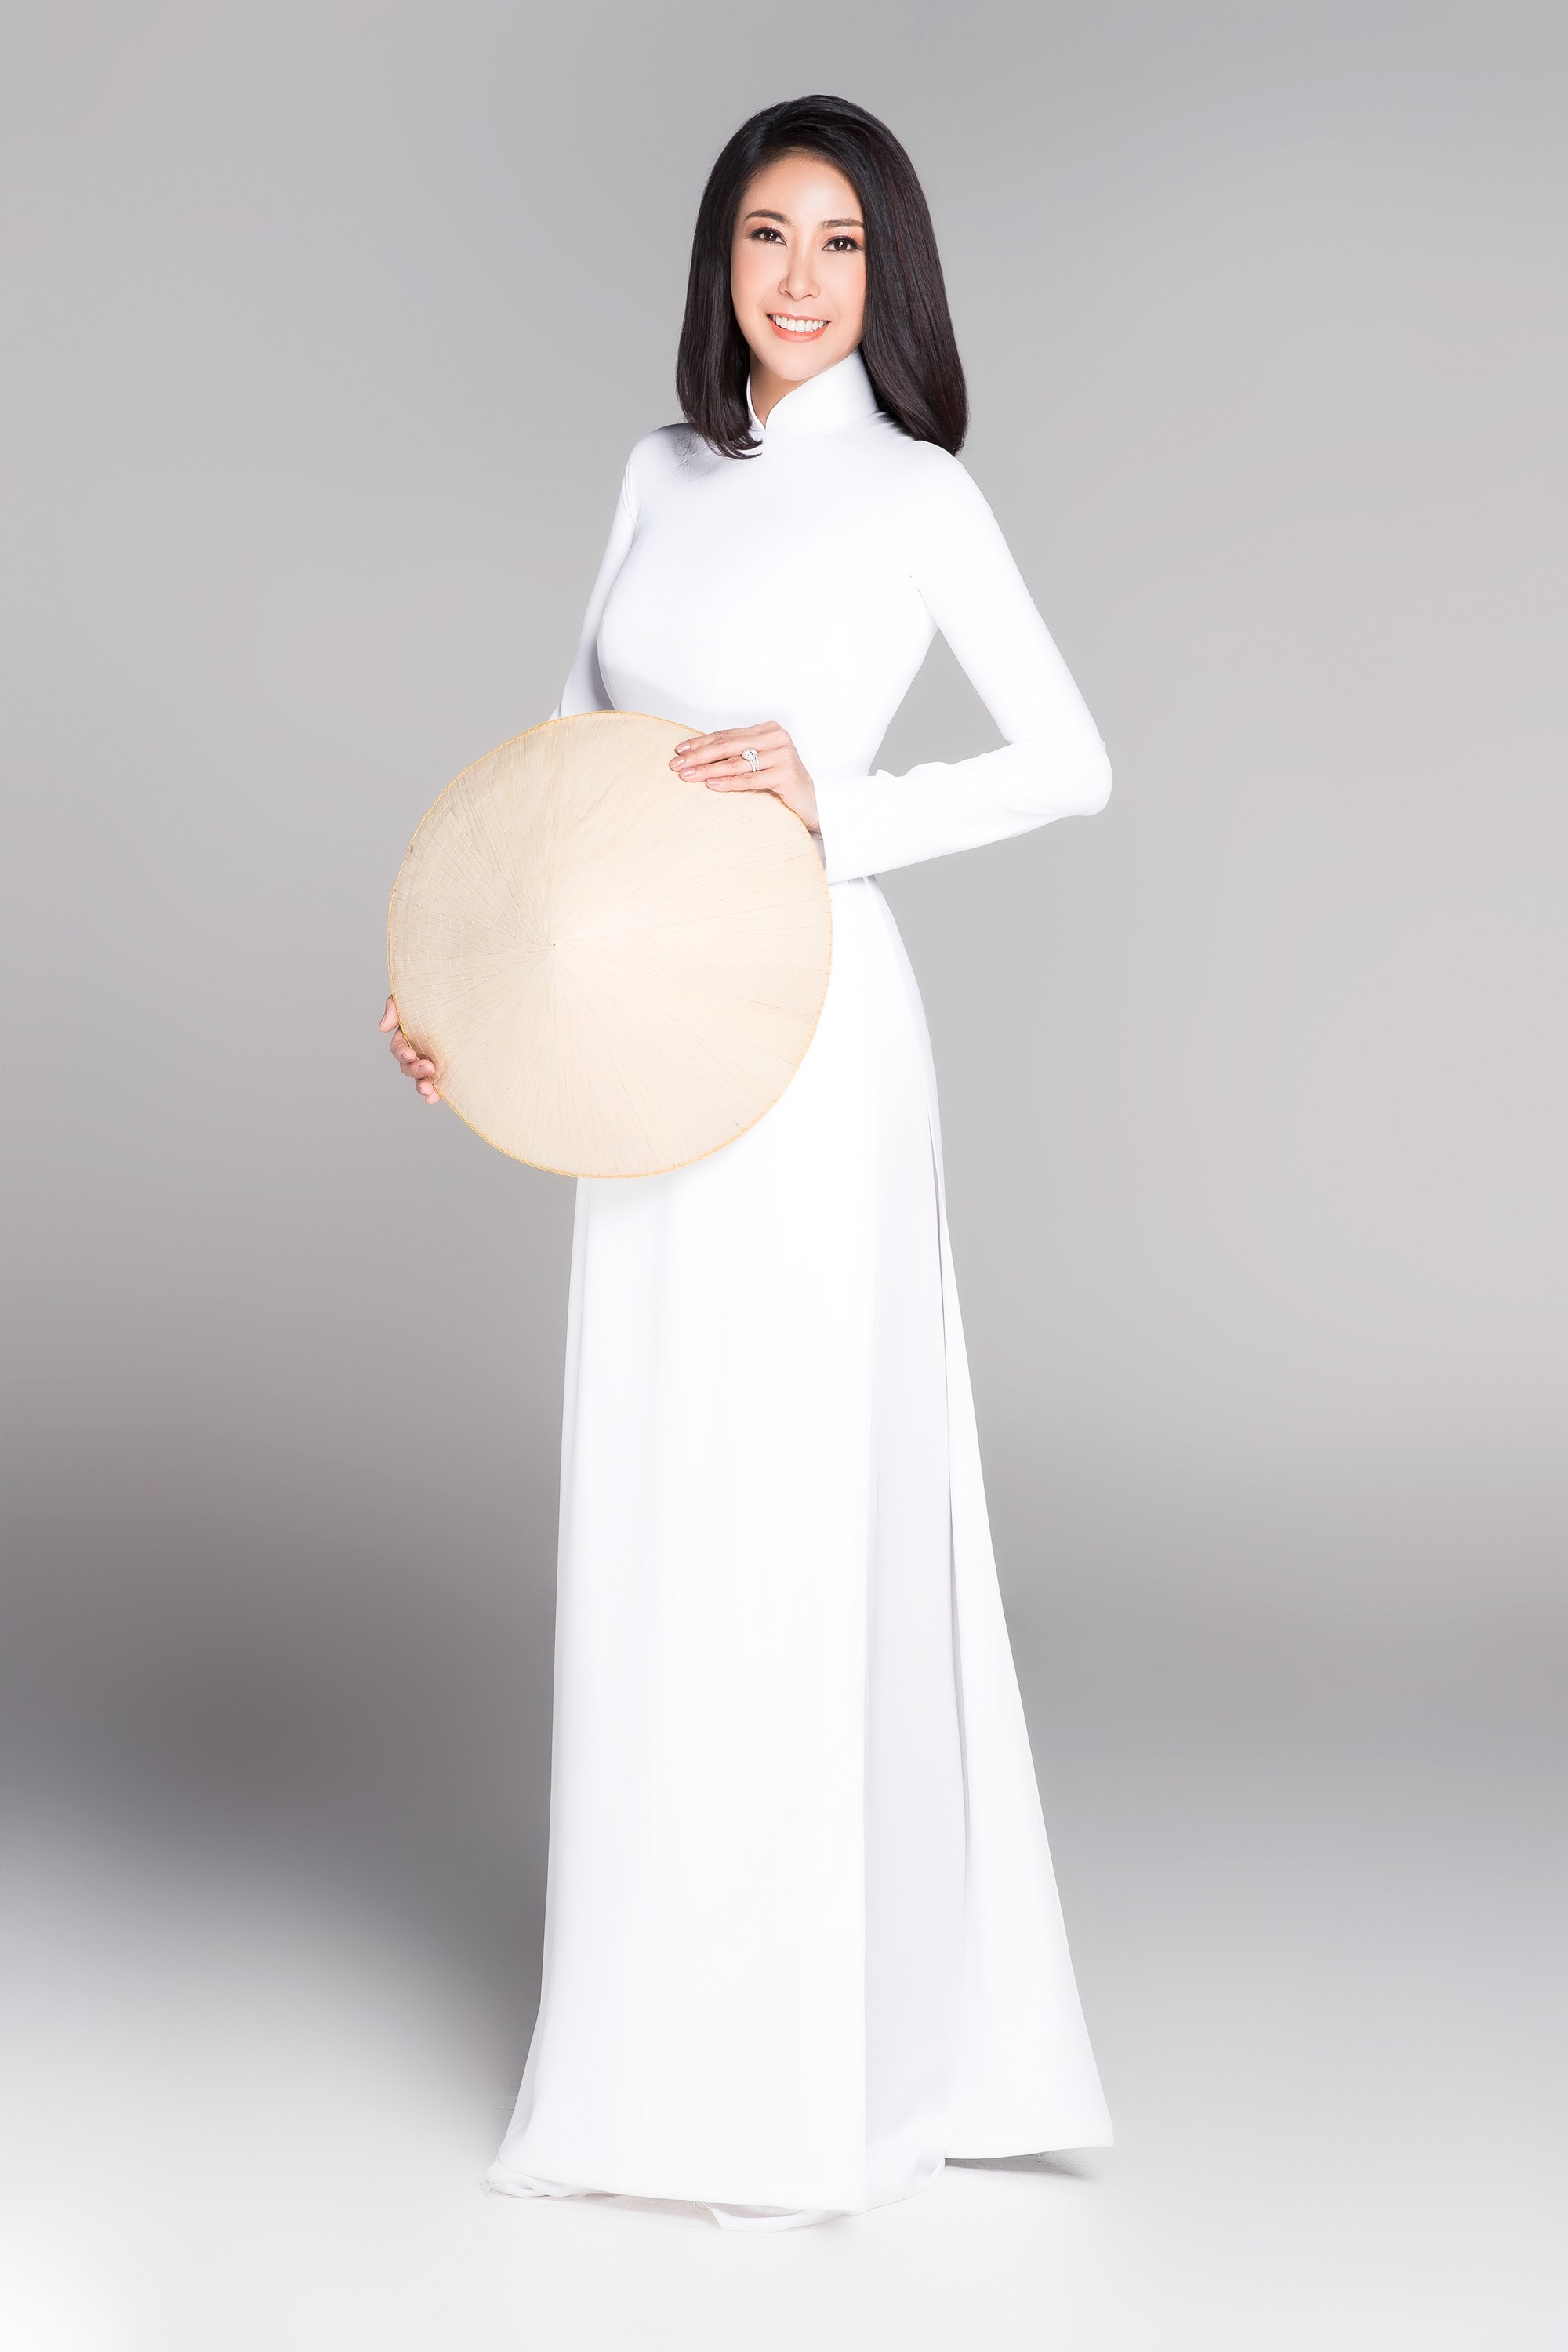 Không váy áo gợi cảm, Hoa hậu Kỳ Duyên, Đặng Thu Thảo lại gợi nhớ cả bầu trời thanh xuân khi diện áo dài trắng nữ sinh - Ảnh 9.